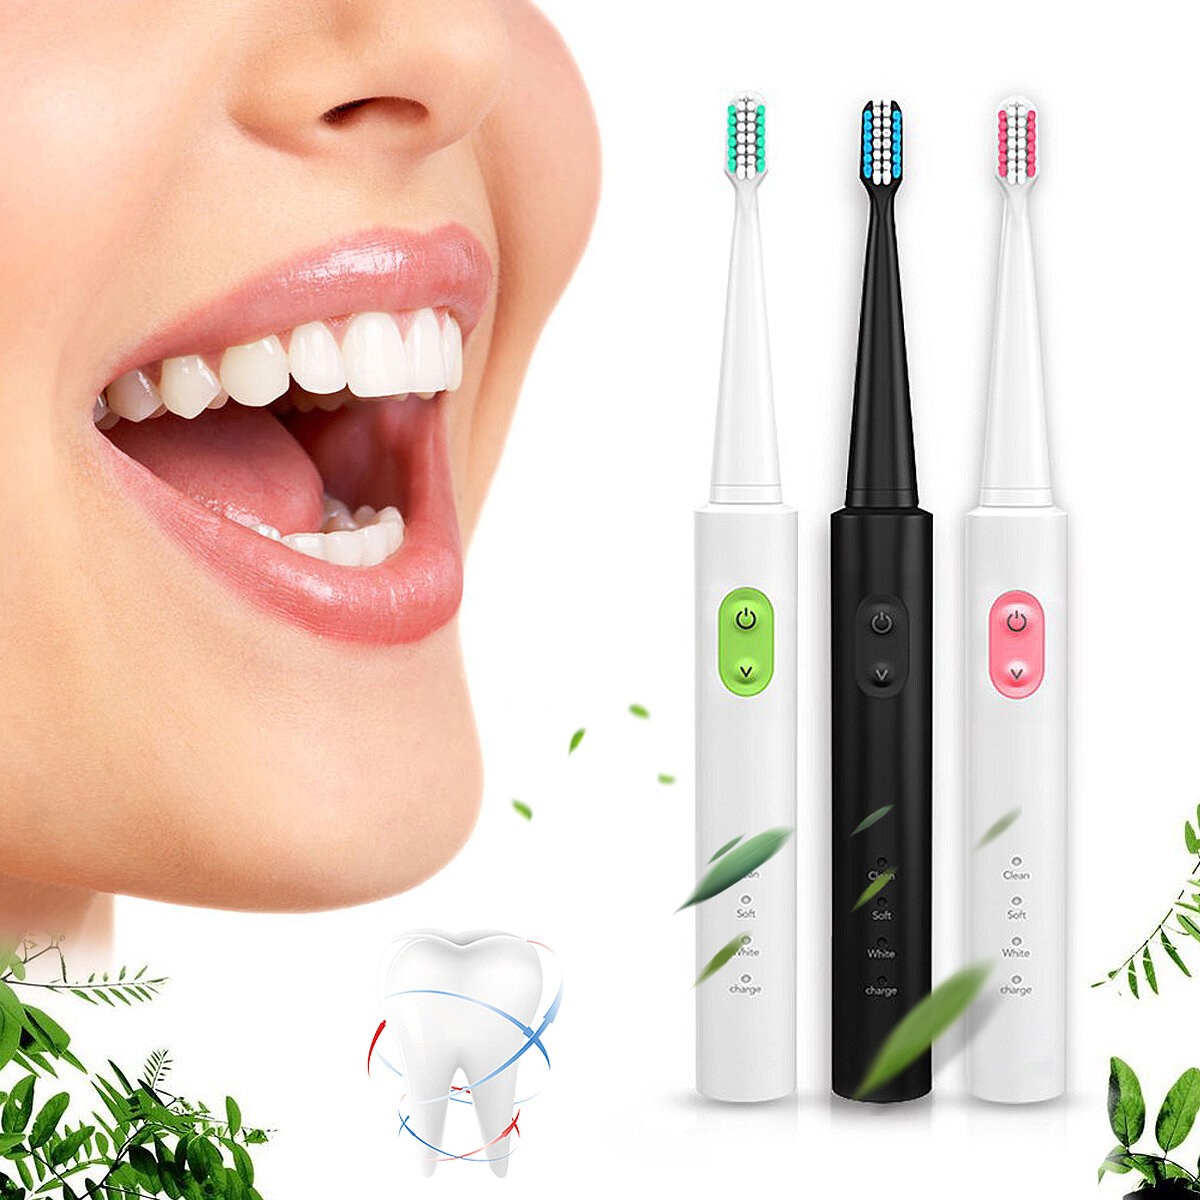 Brosse à dents électrique ultrasonique rechargeable de voyage imperméabilisent 3 dents de mode de nettoyage propres + 4 têtes